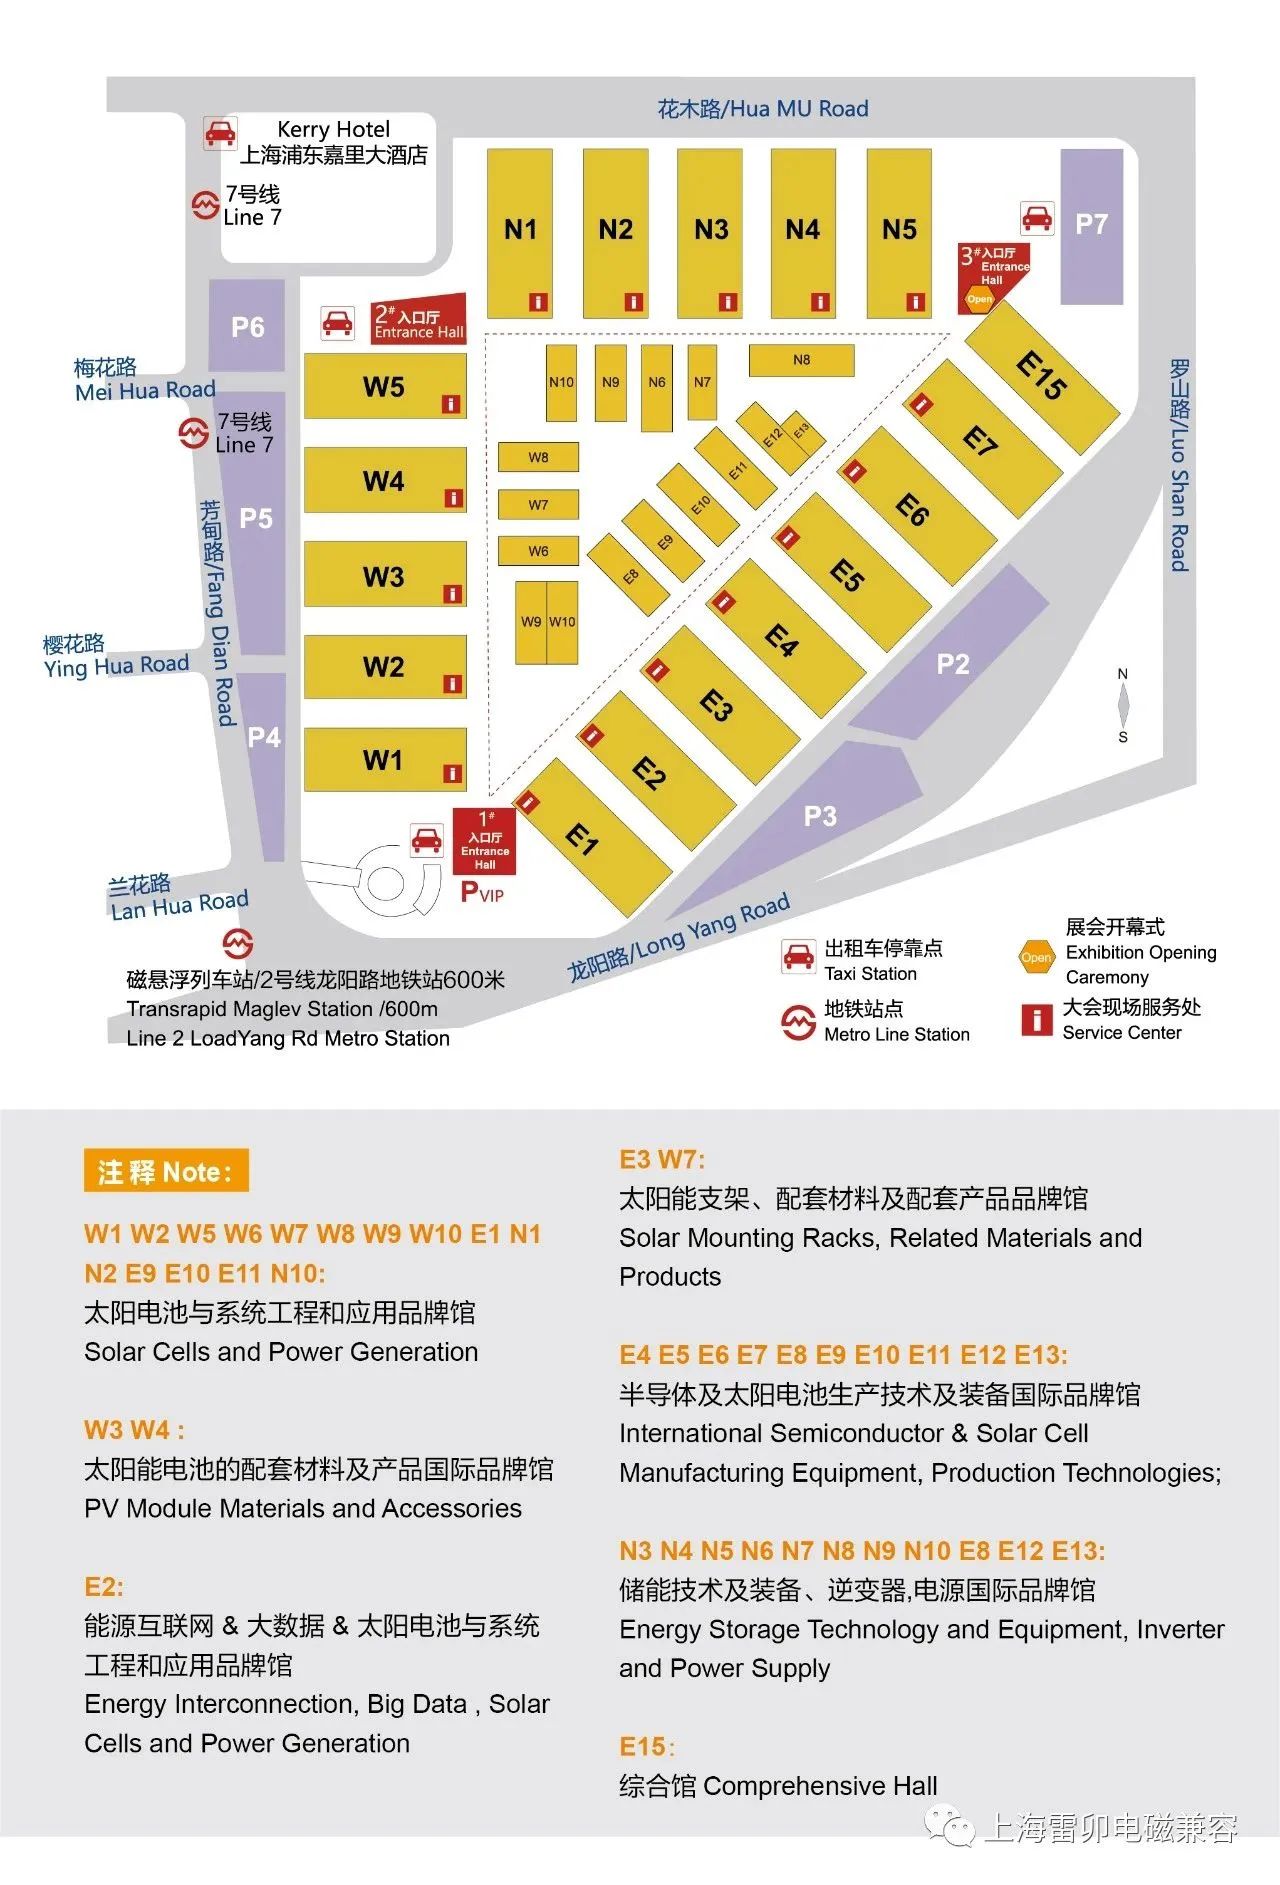 Shanghai Leiditech convida você a participar da Exposição de Armazenamento de Energia Fotovoltaica 2023SNEC